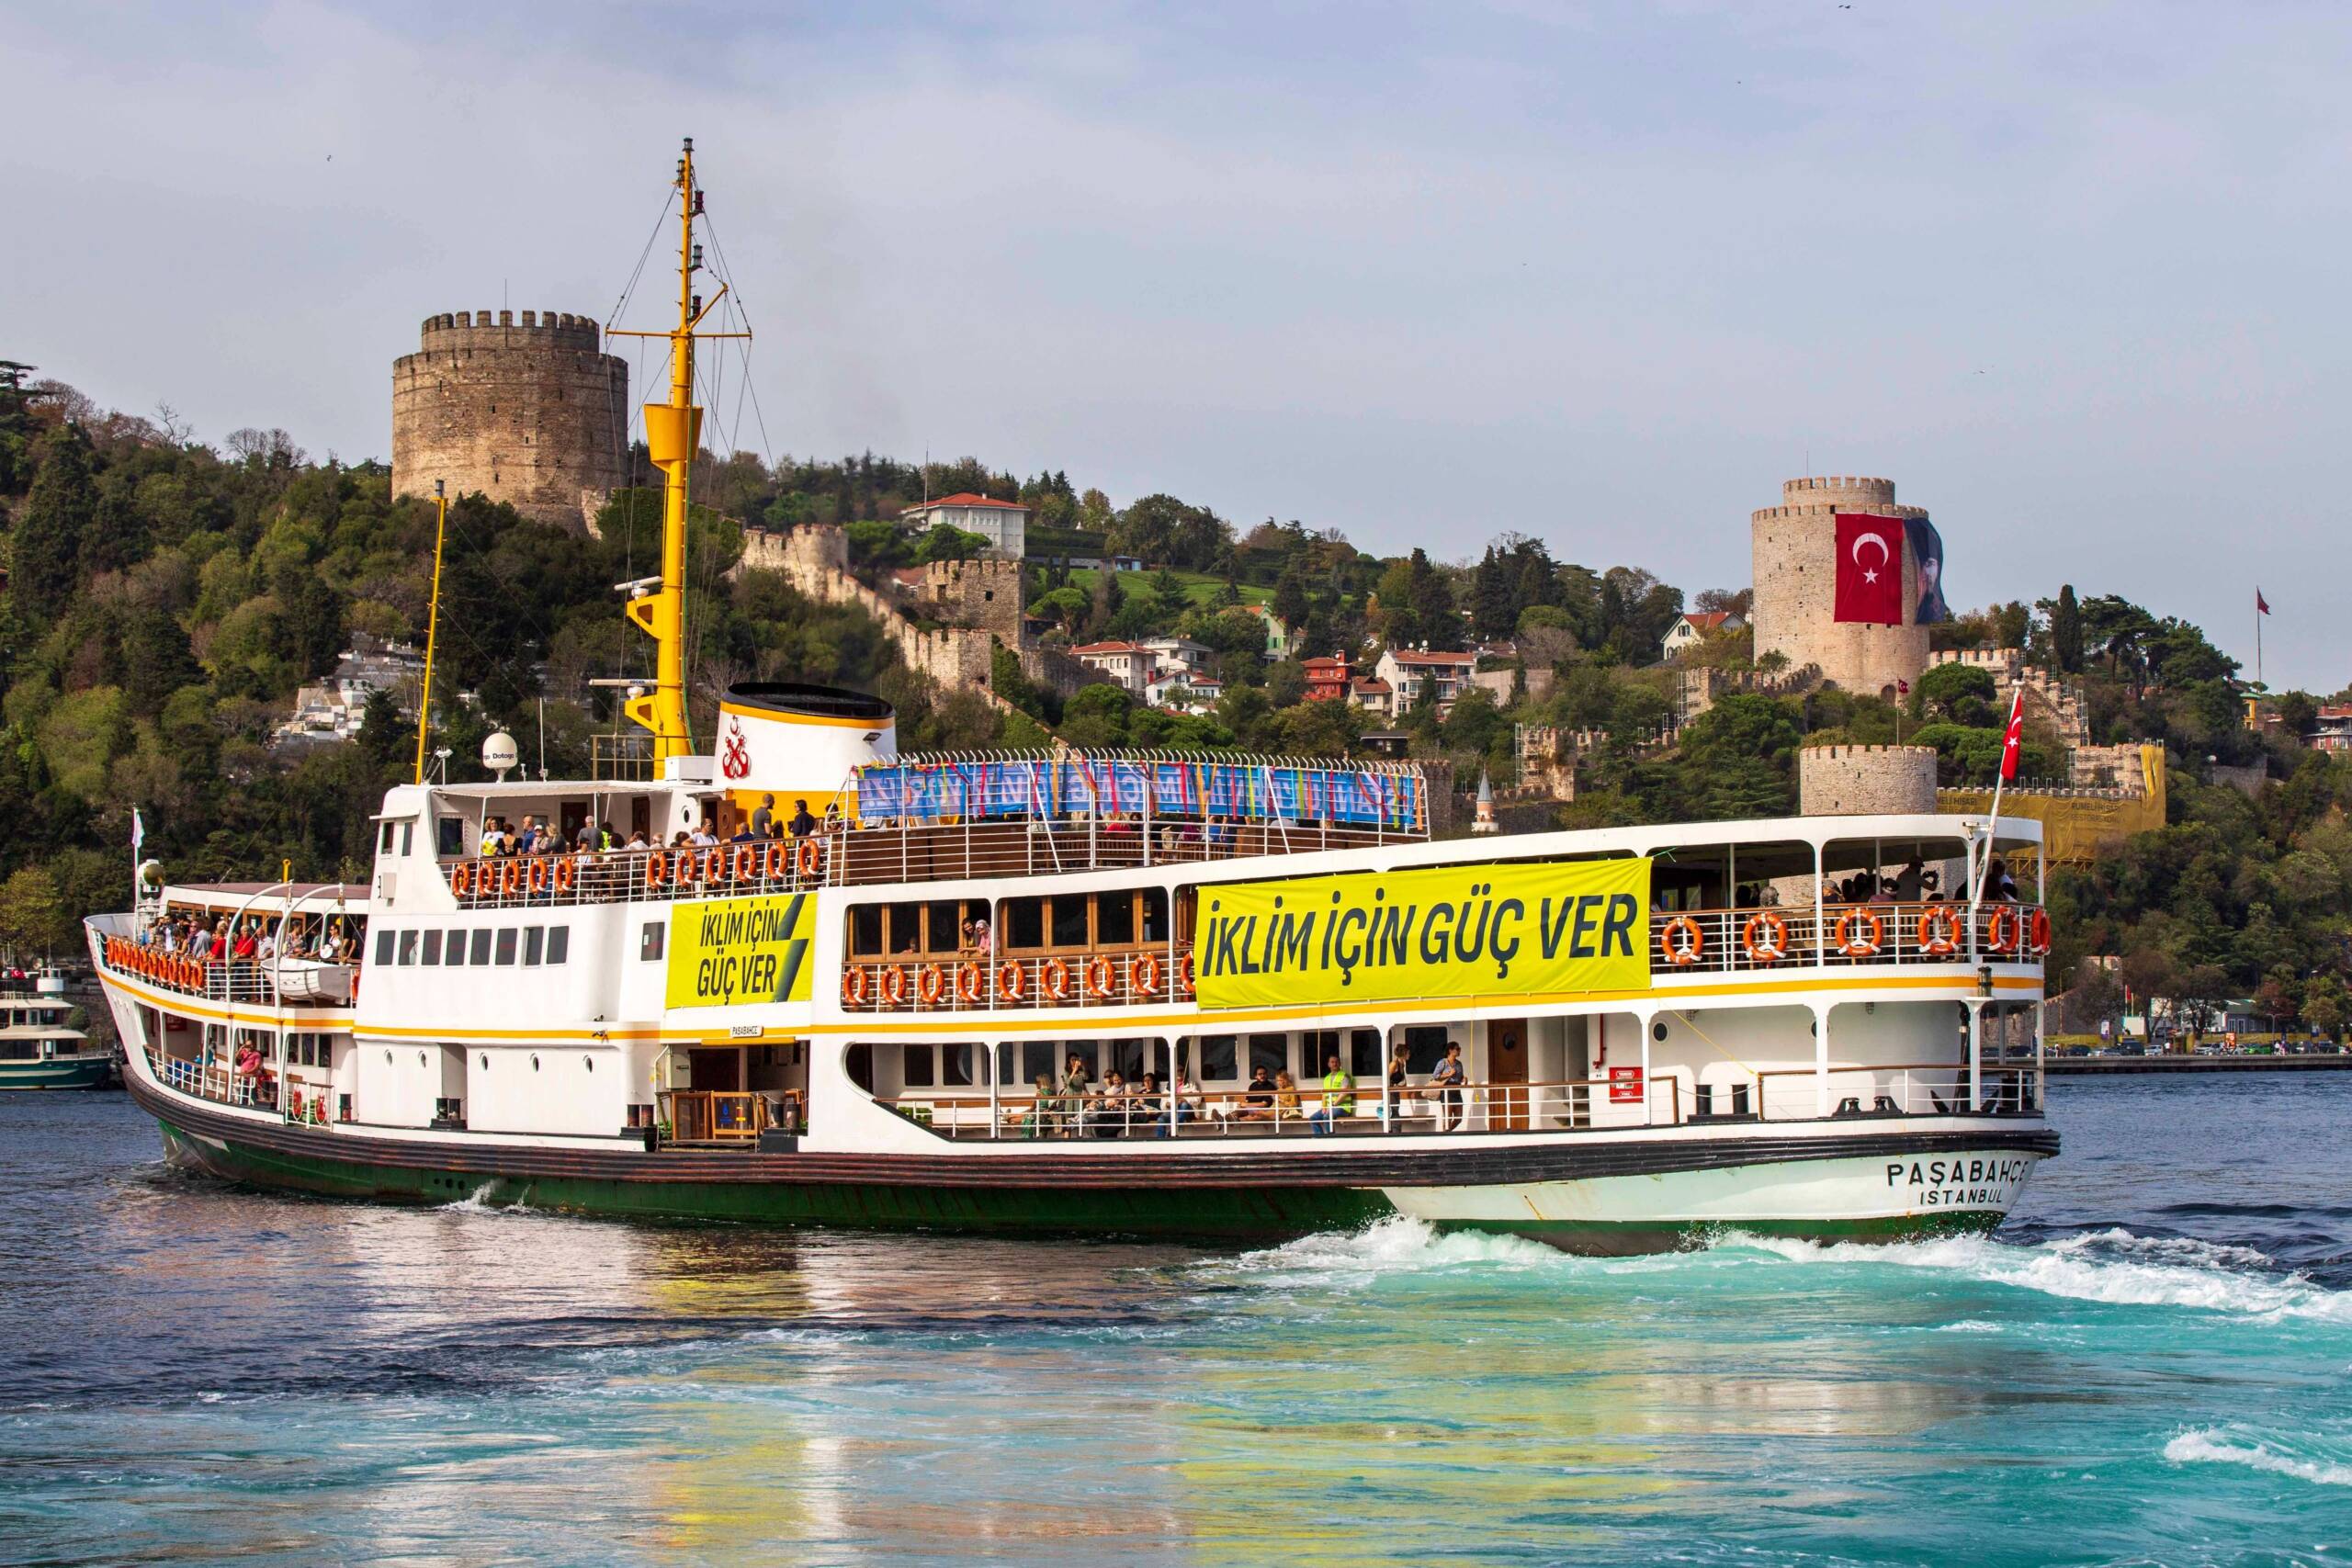 Istanbul, Türkei, 4.11.: 350 Türkiye verwandelt eine der traditionellen Bosporusfähren in eine Klimaschutzfähre mit Workshops während der Fahrt und fordert den Ausbau der erneuerbaren Energien. Bildnachweis: 350 Türkiye